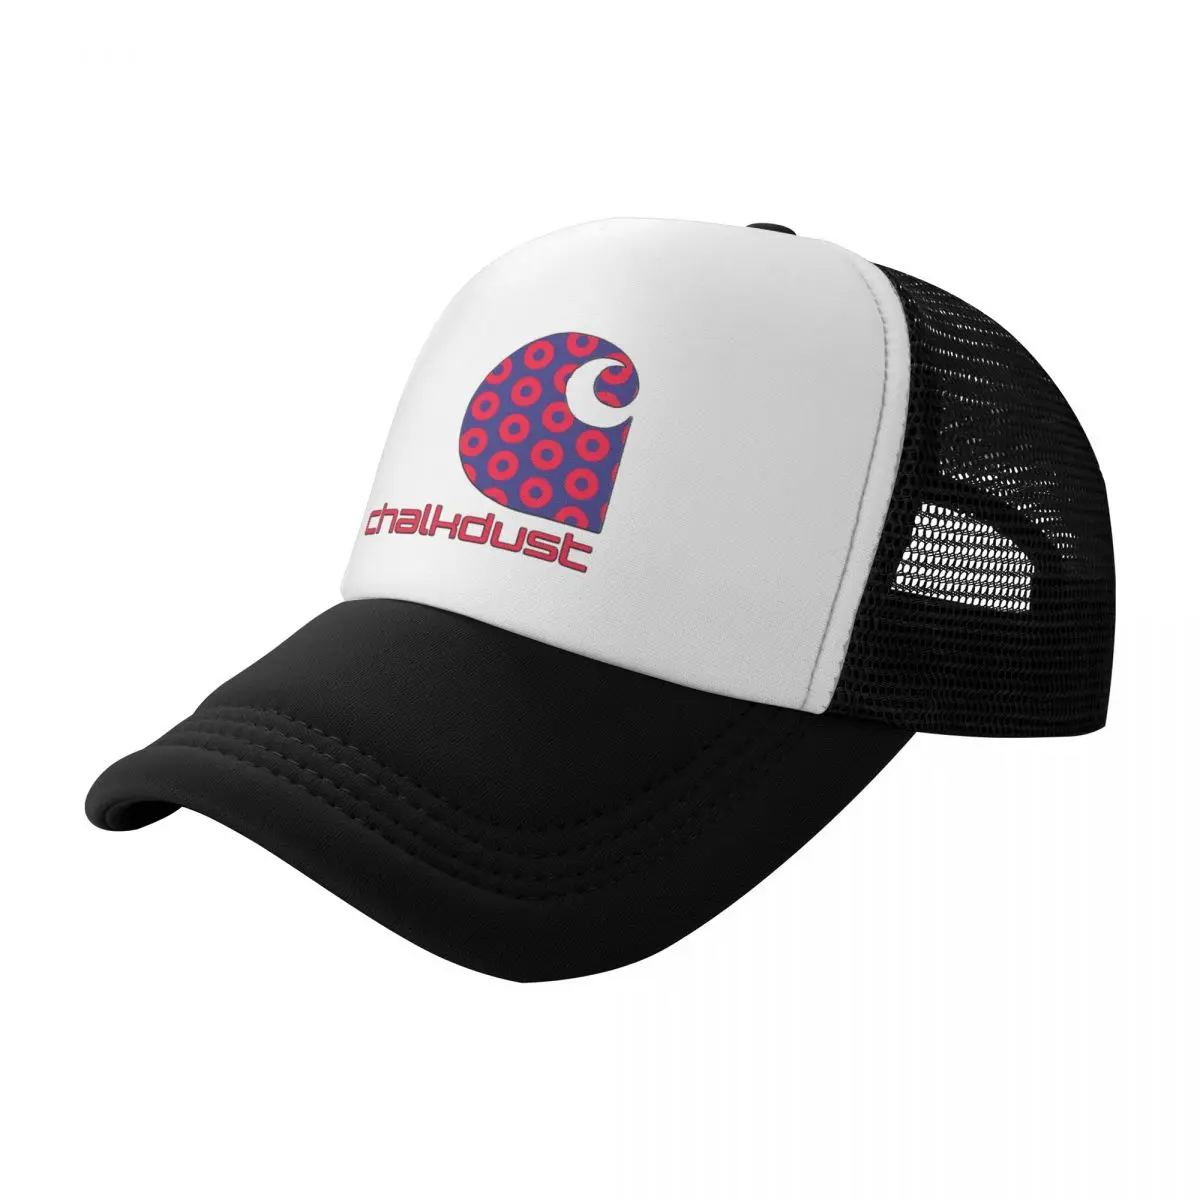 Phish donut chalkdust Baseball Cap Golf Hat Man New In Hat black Designer Man Women's